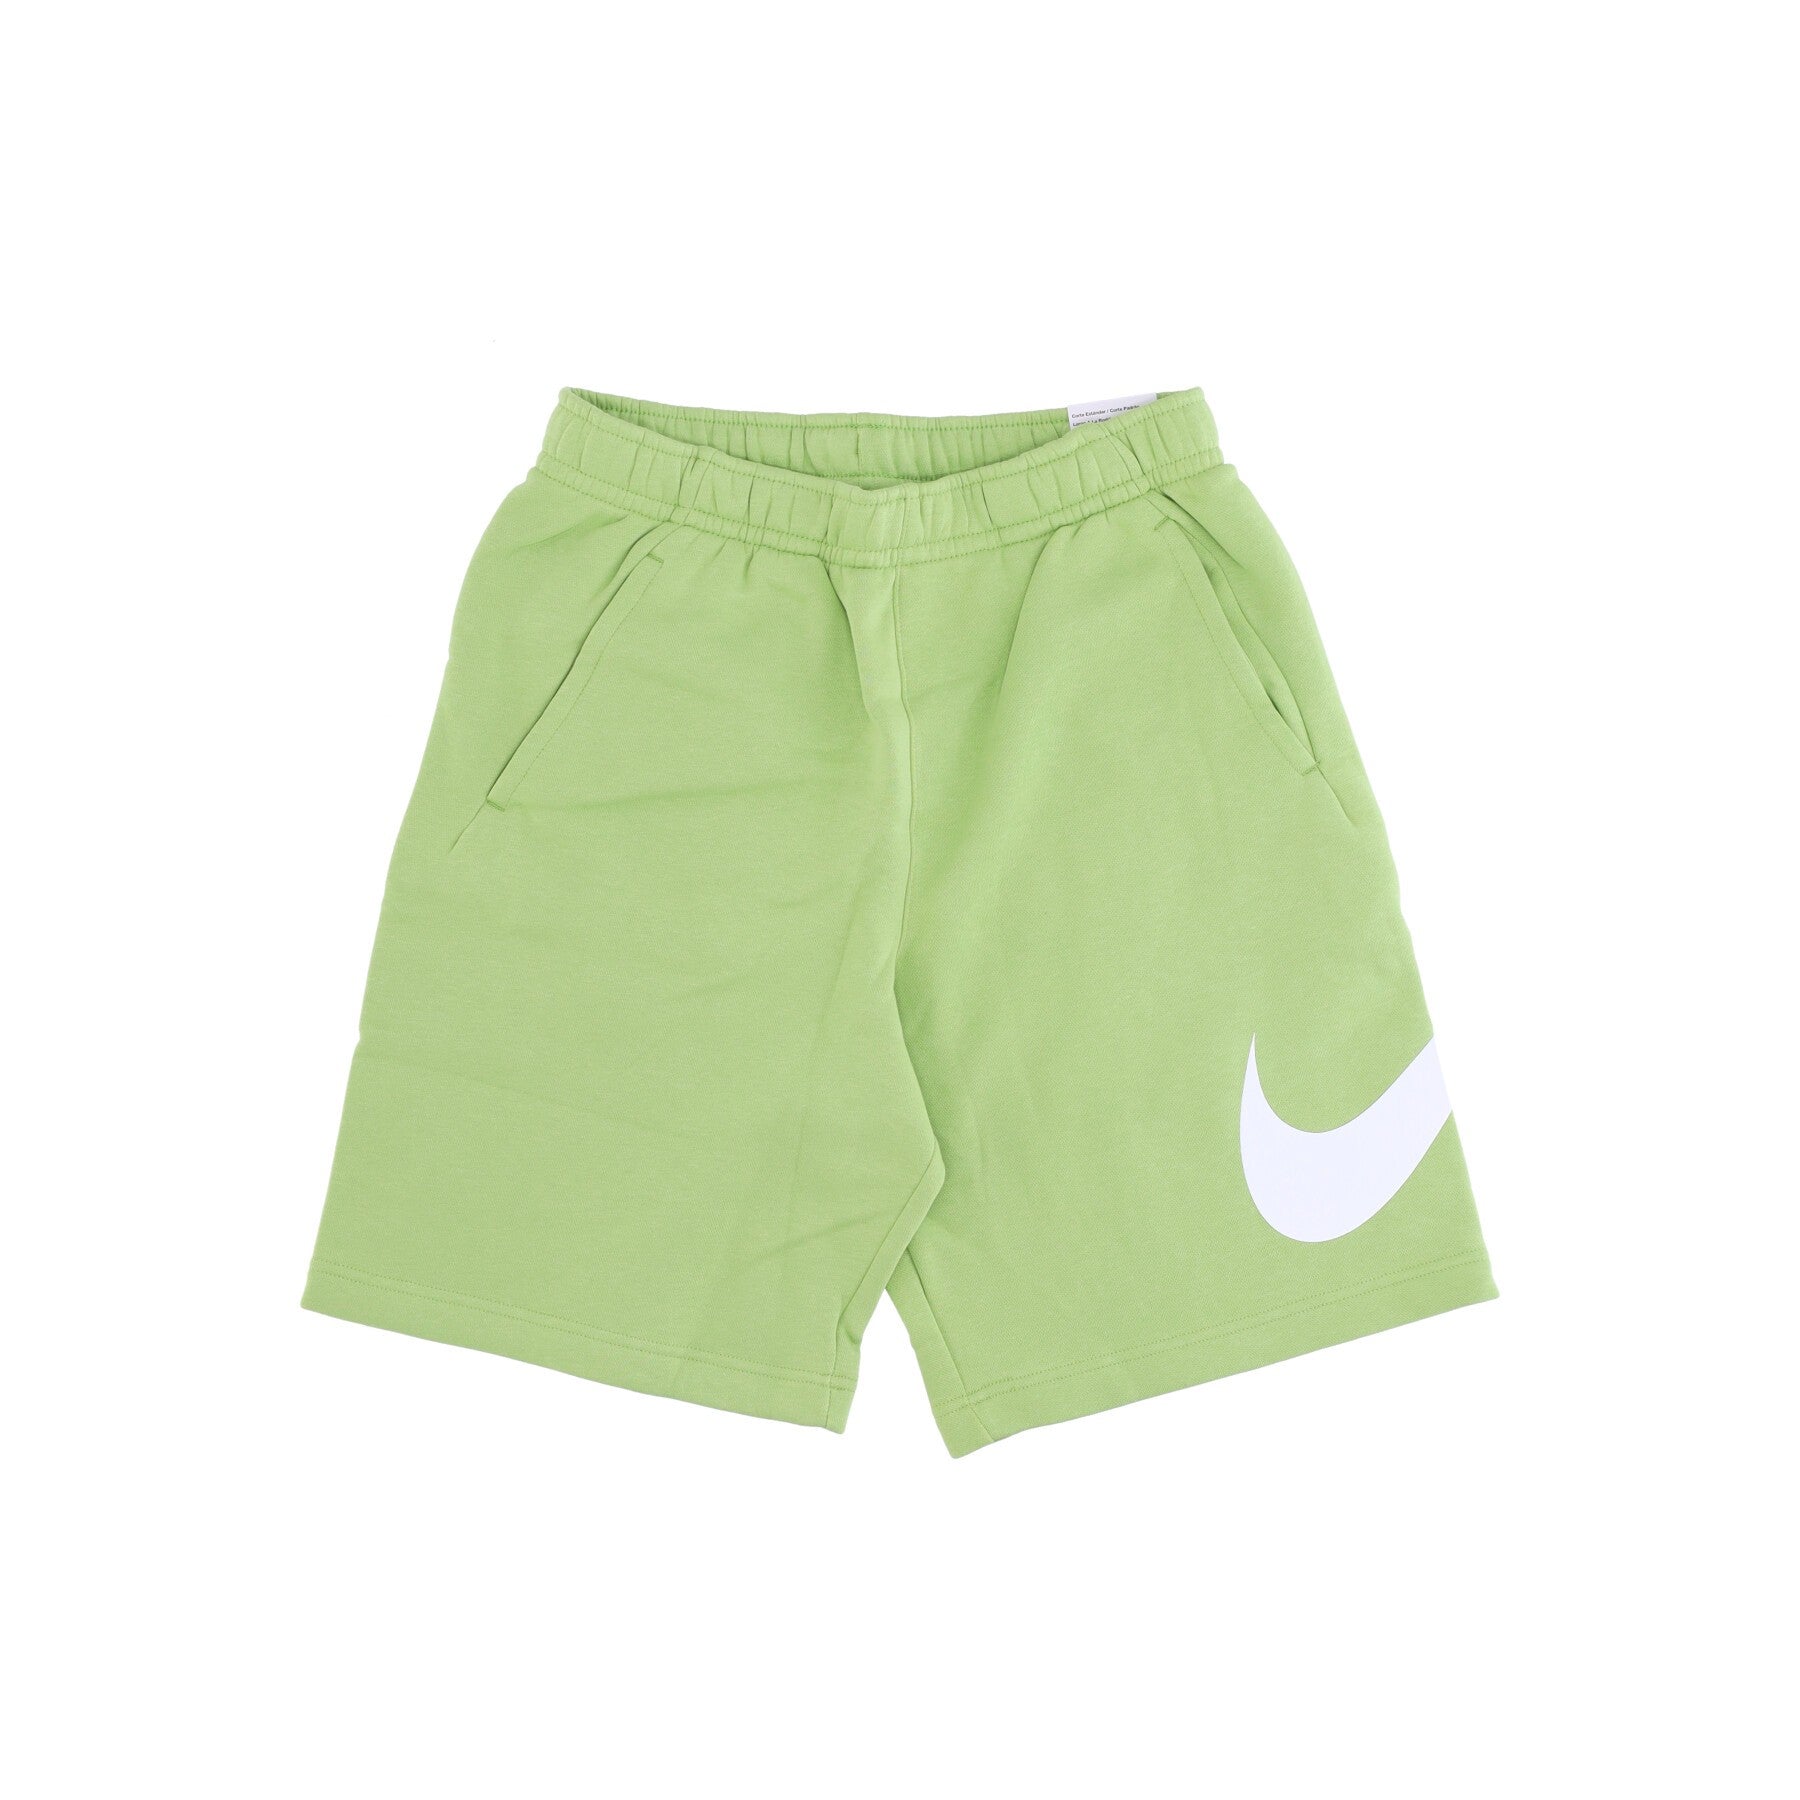 Pantalone Corto Tuta Felpato Uomo Sportswear Club Vivid Green/vivid Green BV2721